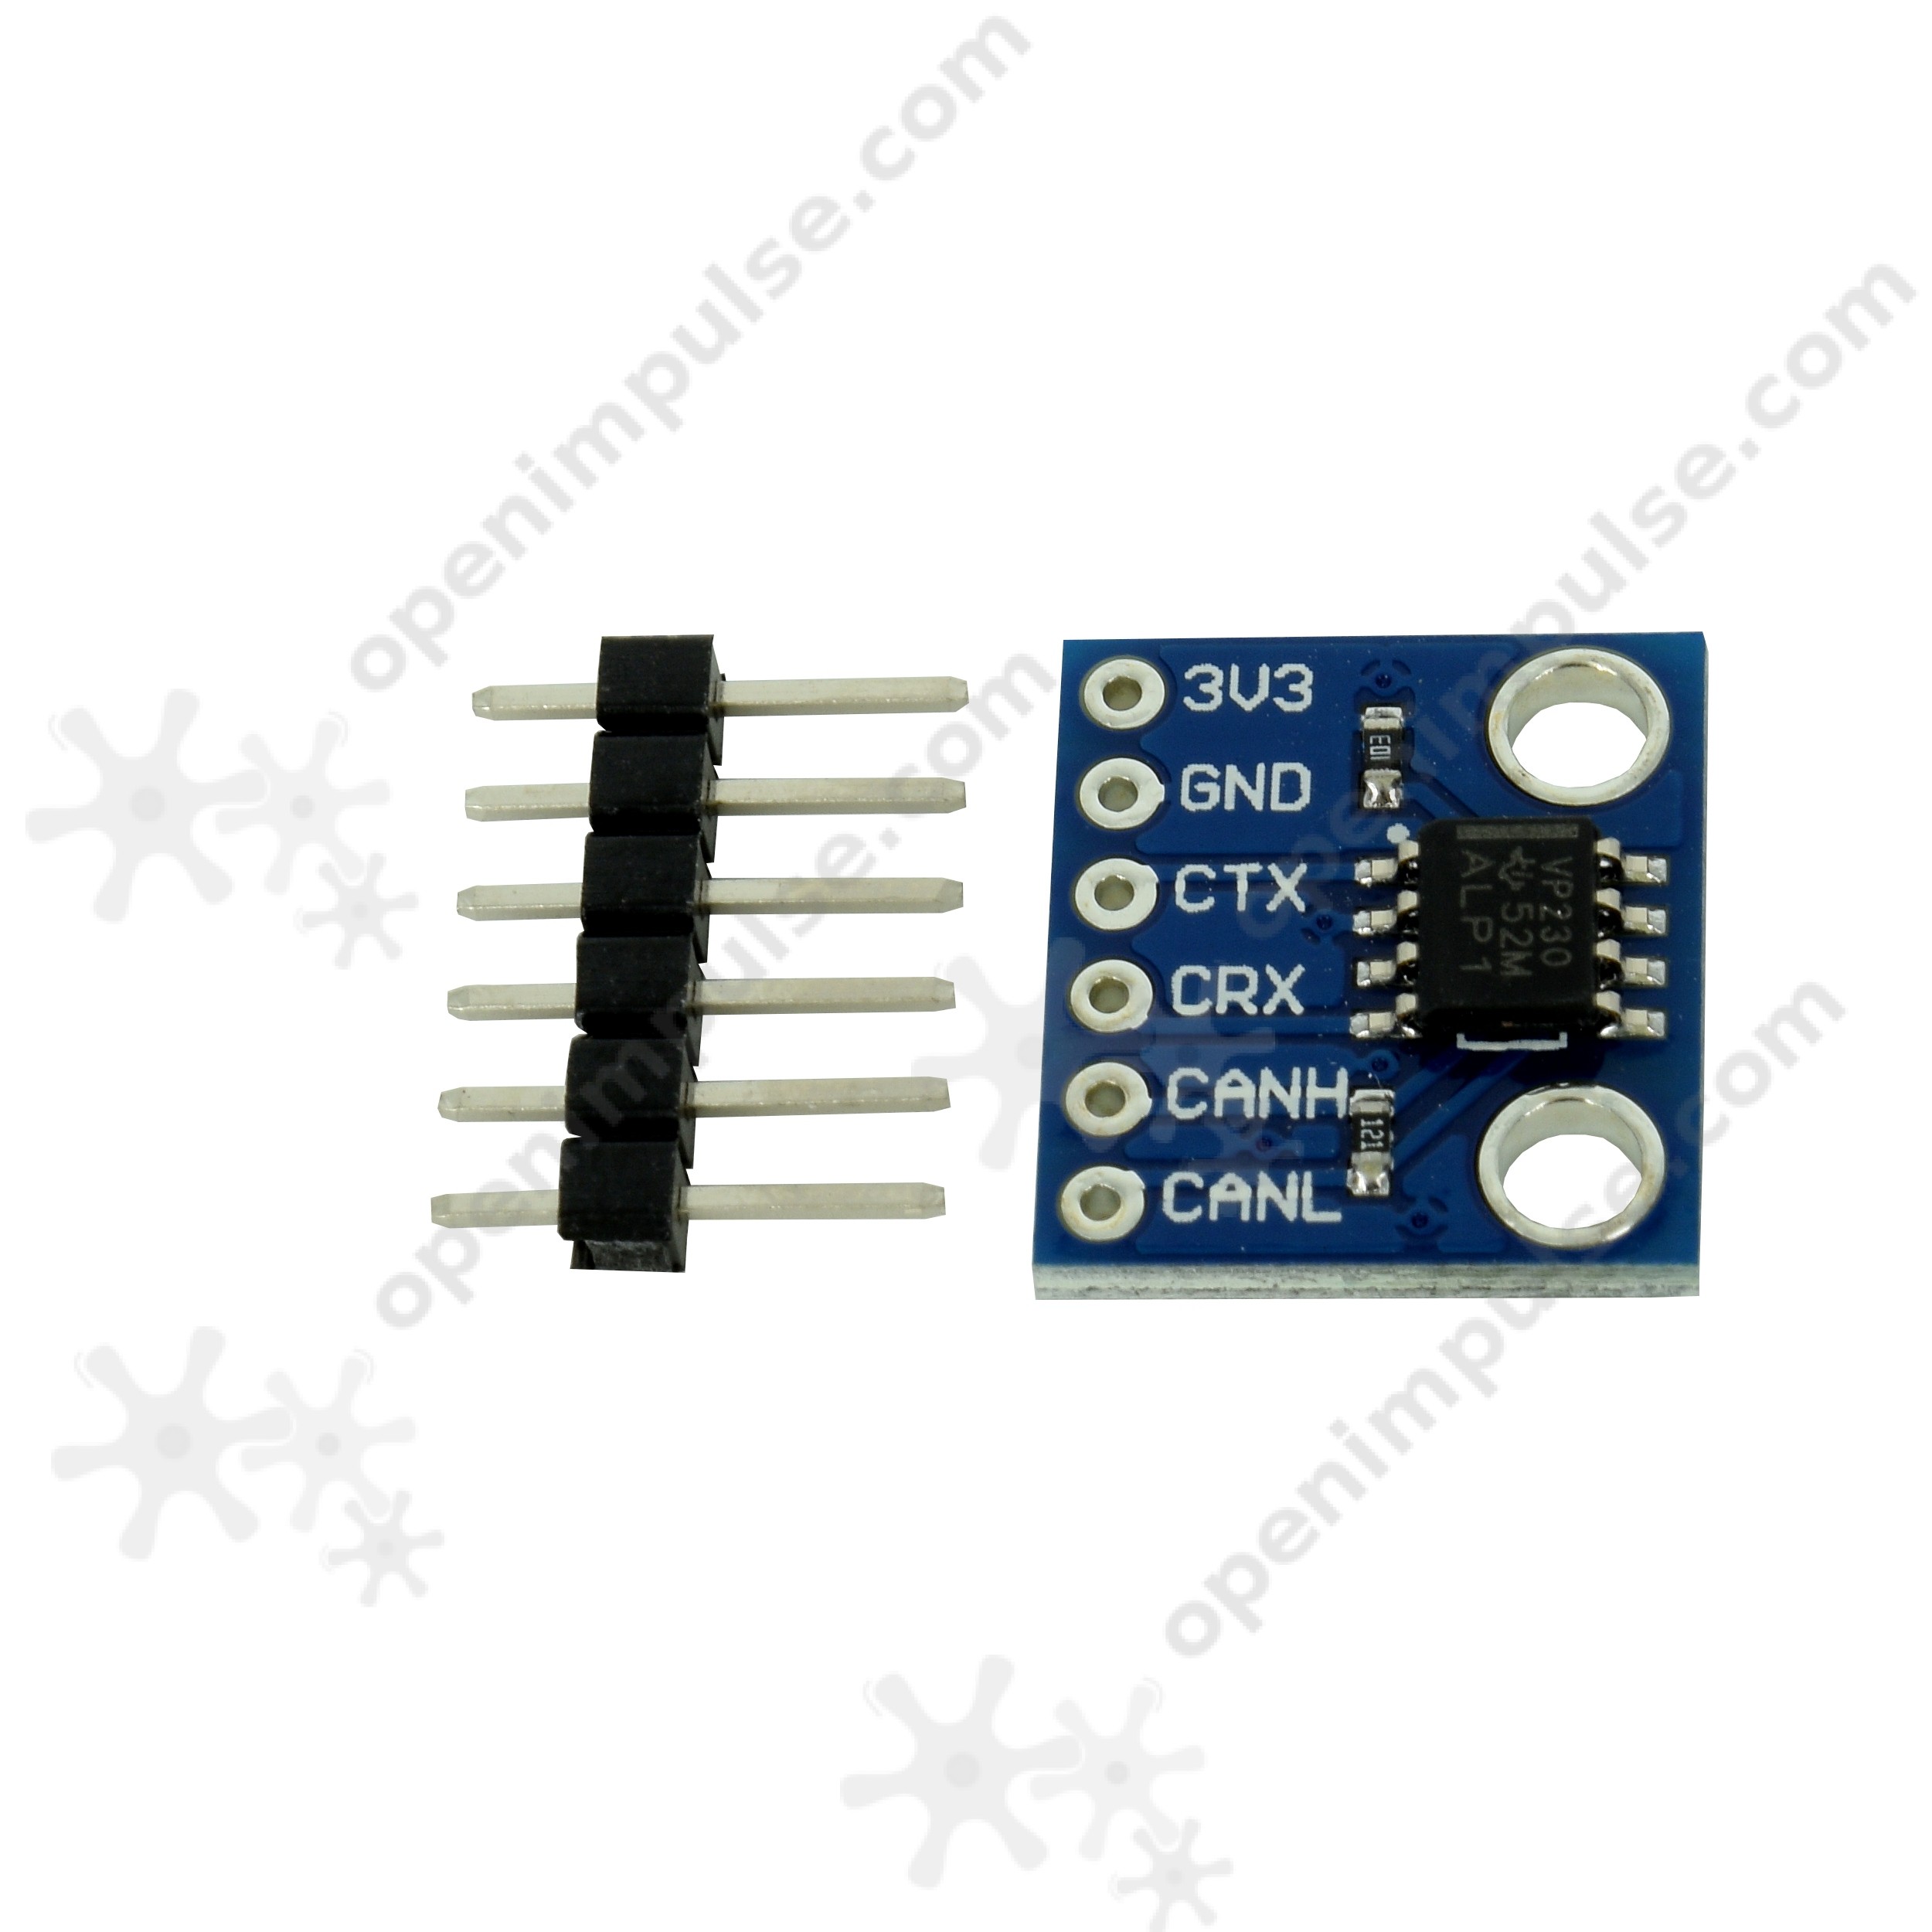 Sn65hvd230 Can Bus 1mb/s émetteur-Récepteur communication Module for Arduino 